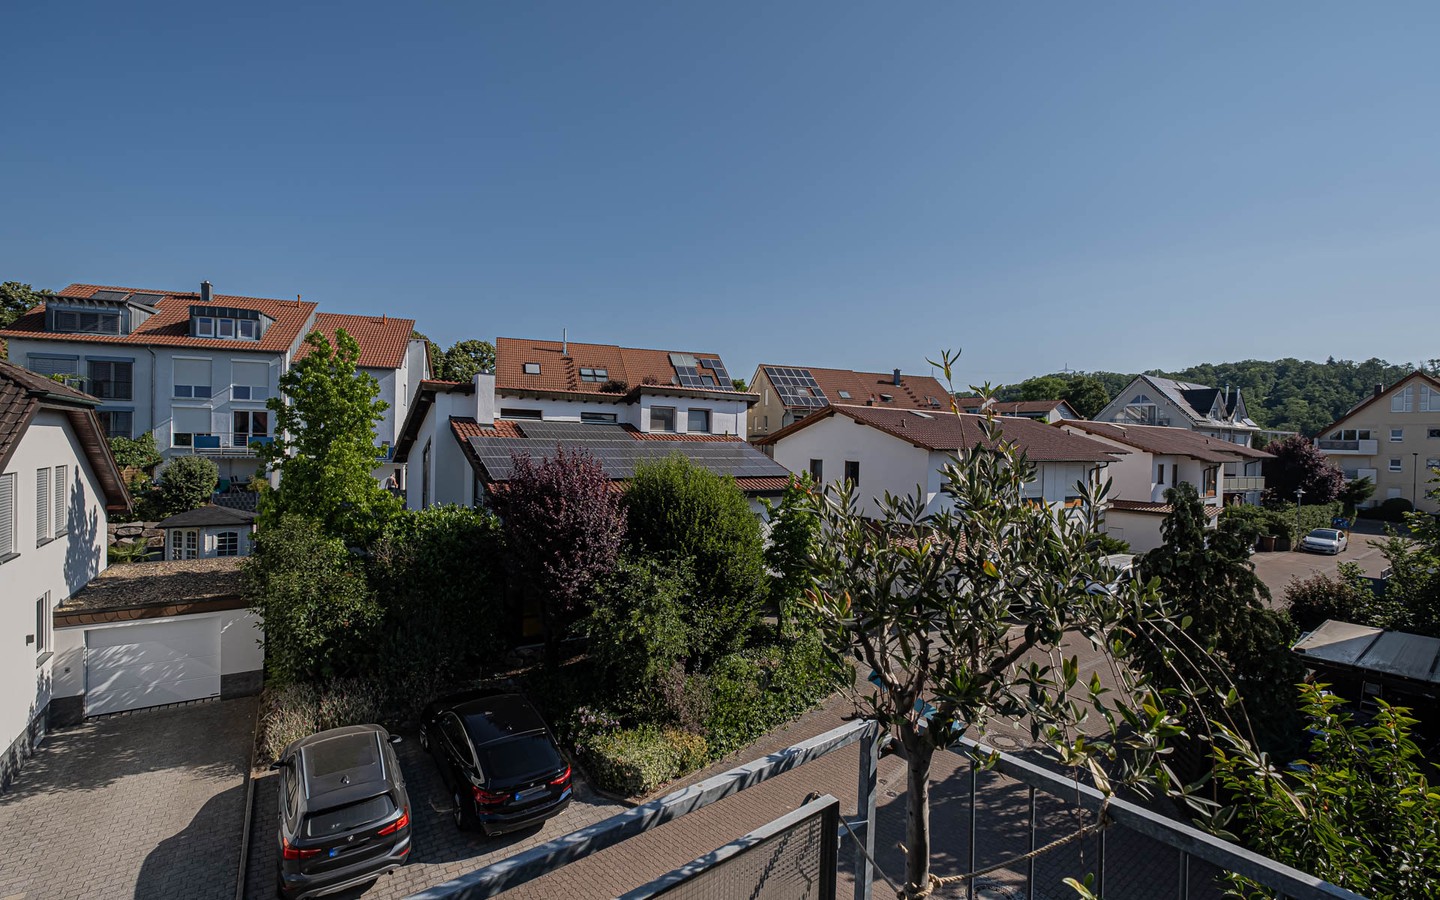 Aussicht vom Balkon - Hell-freundlich-gemütlich: Großzügige 3-Zimmerwohnung in Wiesloch